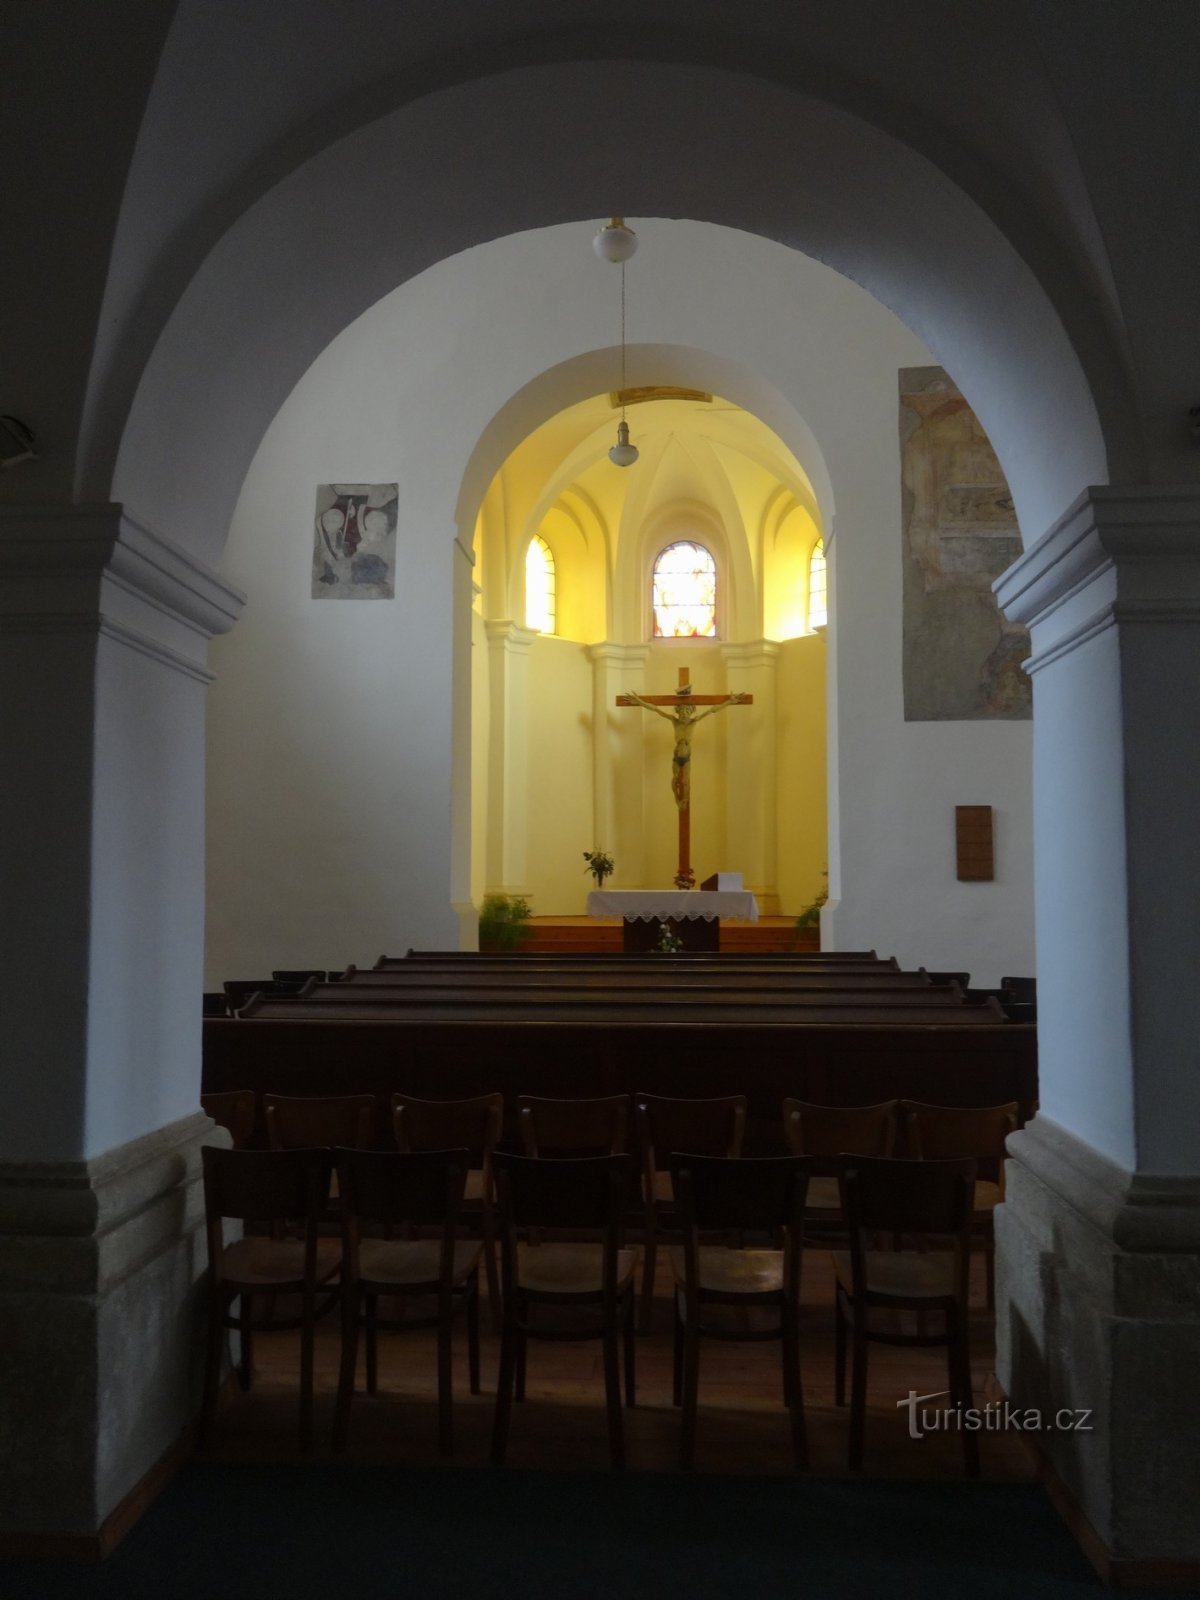 Церковь мастера Яна Гуса в Угерске-Броде